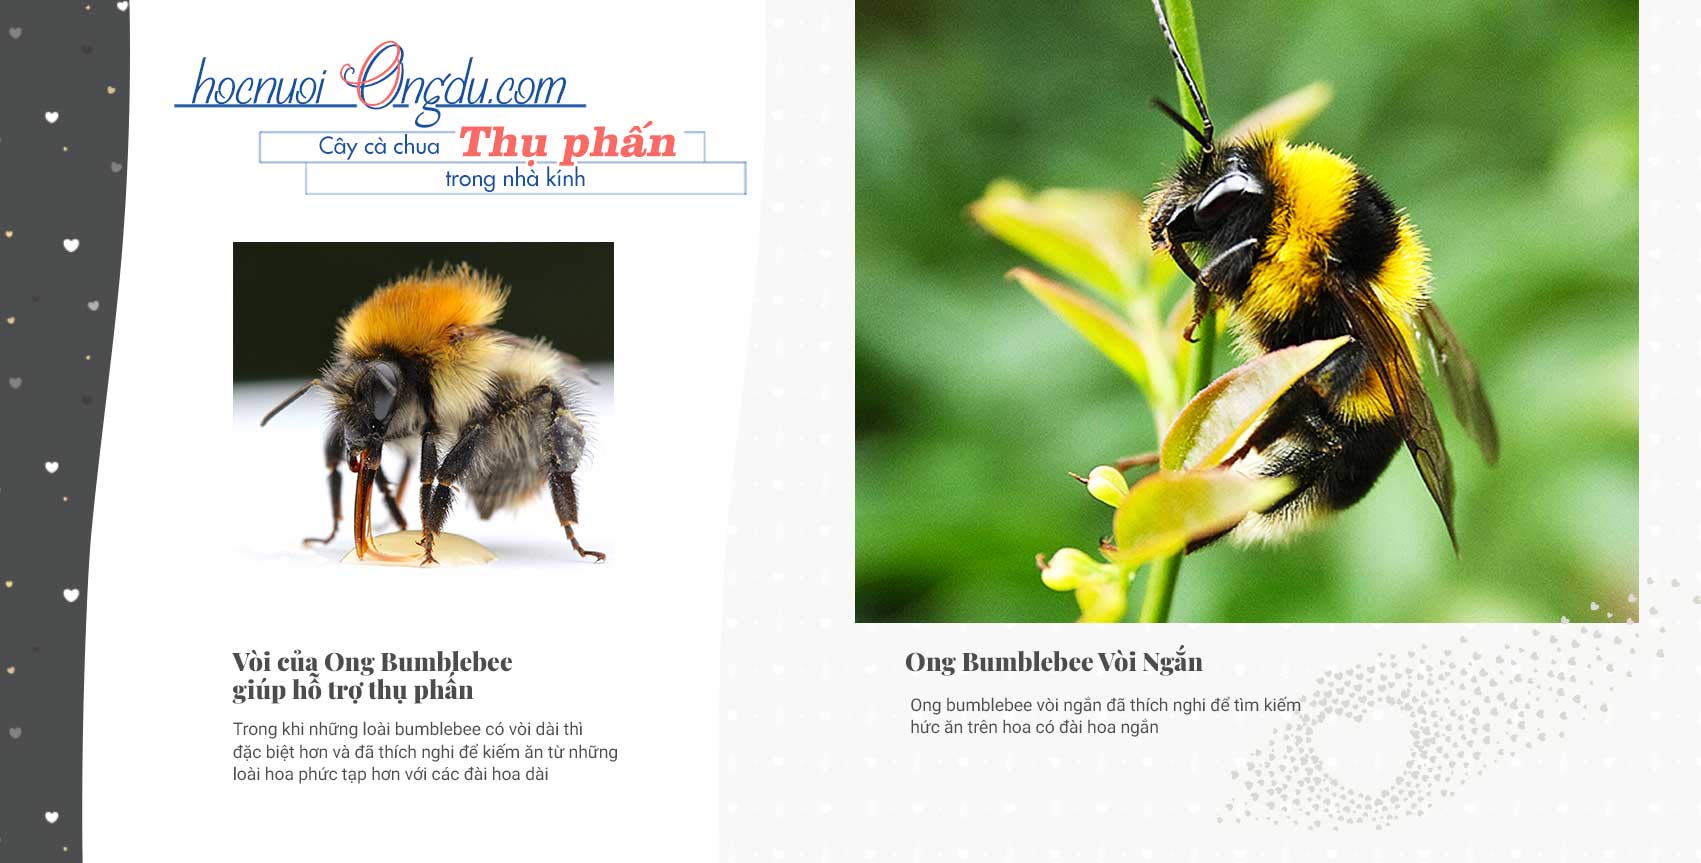 Đặc điểm sinh học của ong bumblebees thụ phấn cho hoa